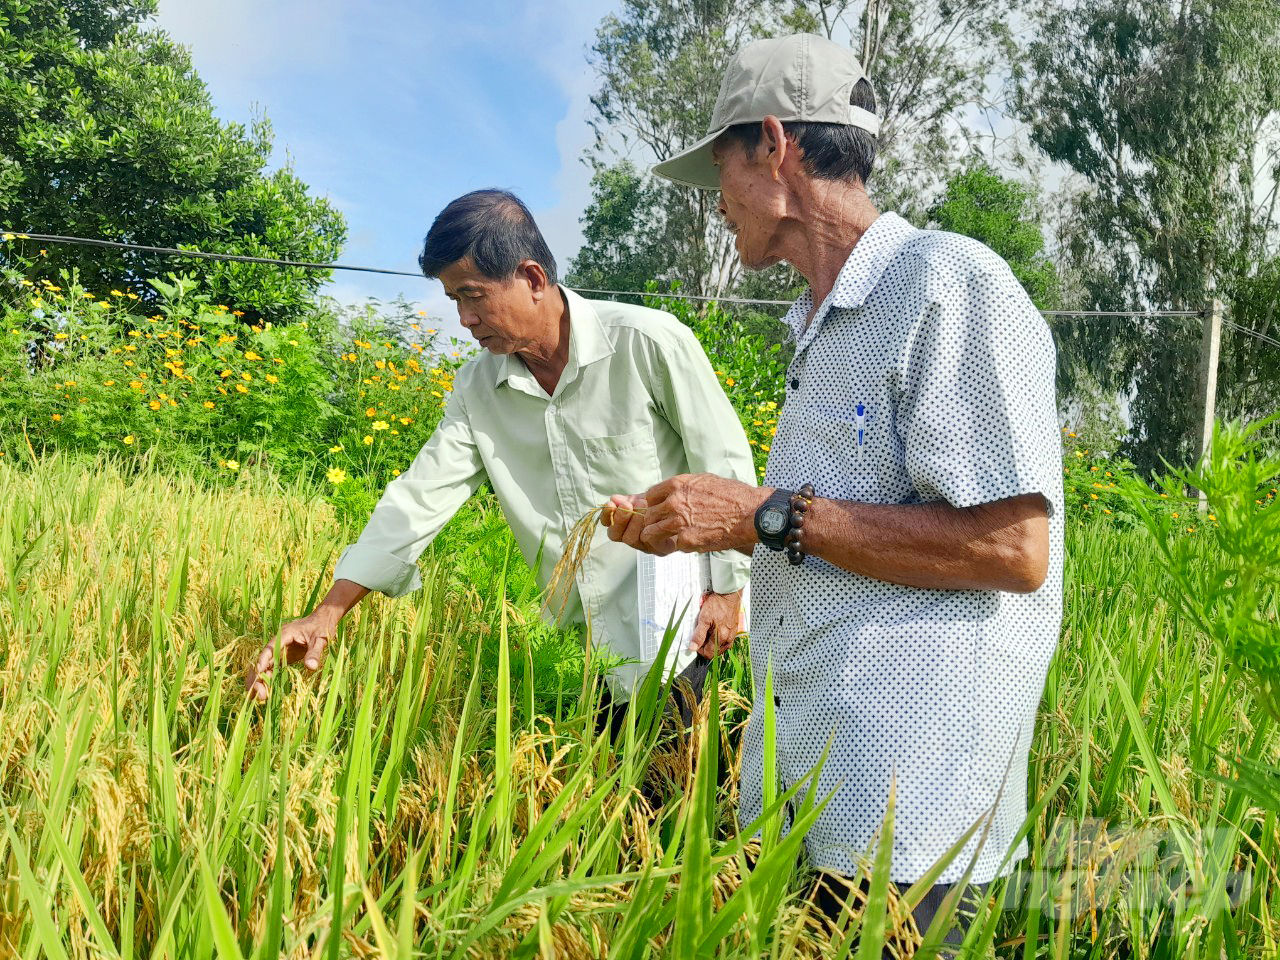 Sản xuất lúa gạo bền vững theo tiêu chuẩn SRP kết hợp trồng hoa sinh thái trên đồng ruộng giúp nông dân giảm 15 - 18% chi phí, tăng thêm 18 - 20% lợi nhuận. Ảnh: Lê Hoàng Vũ.